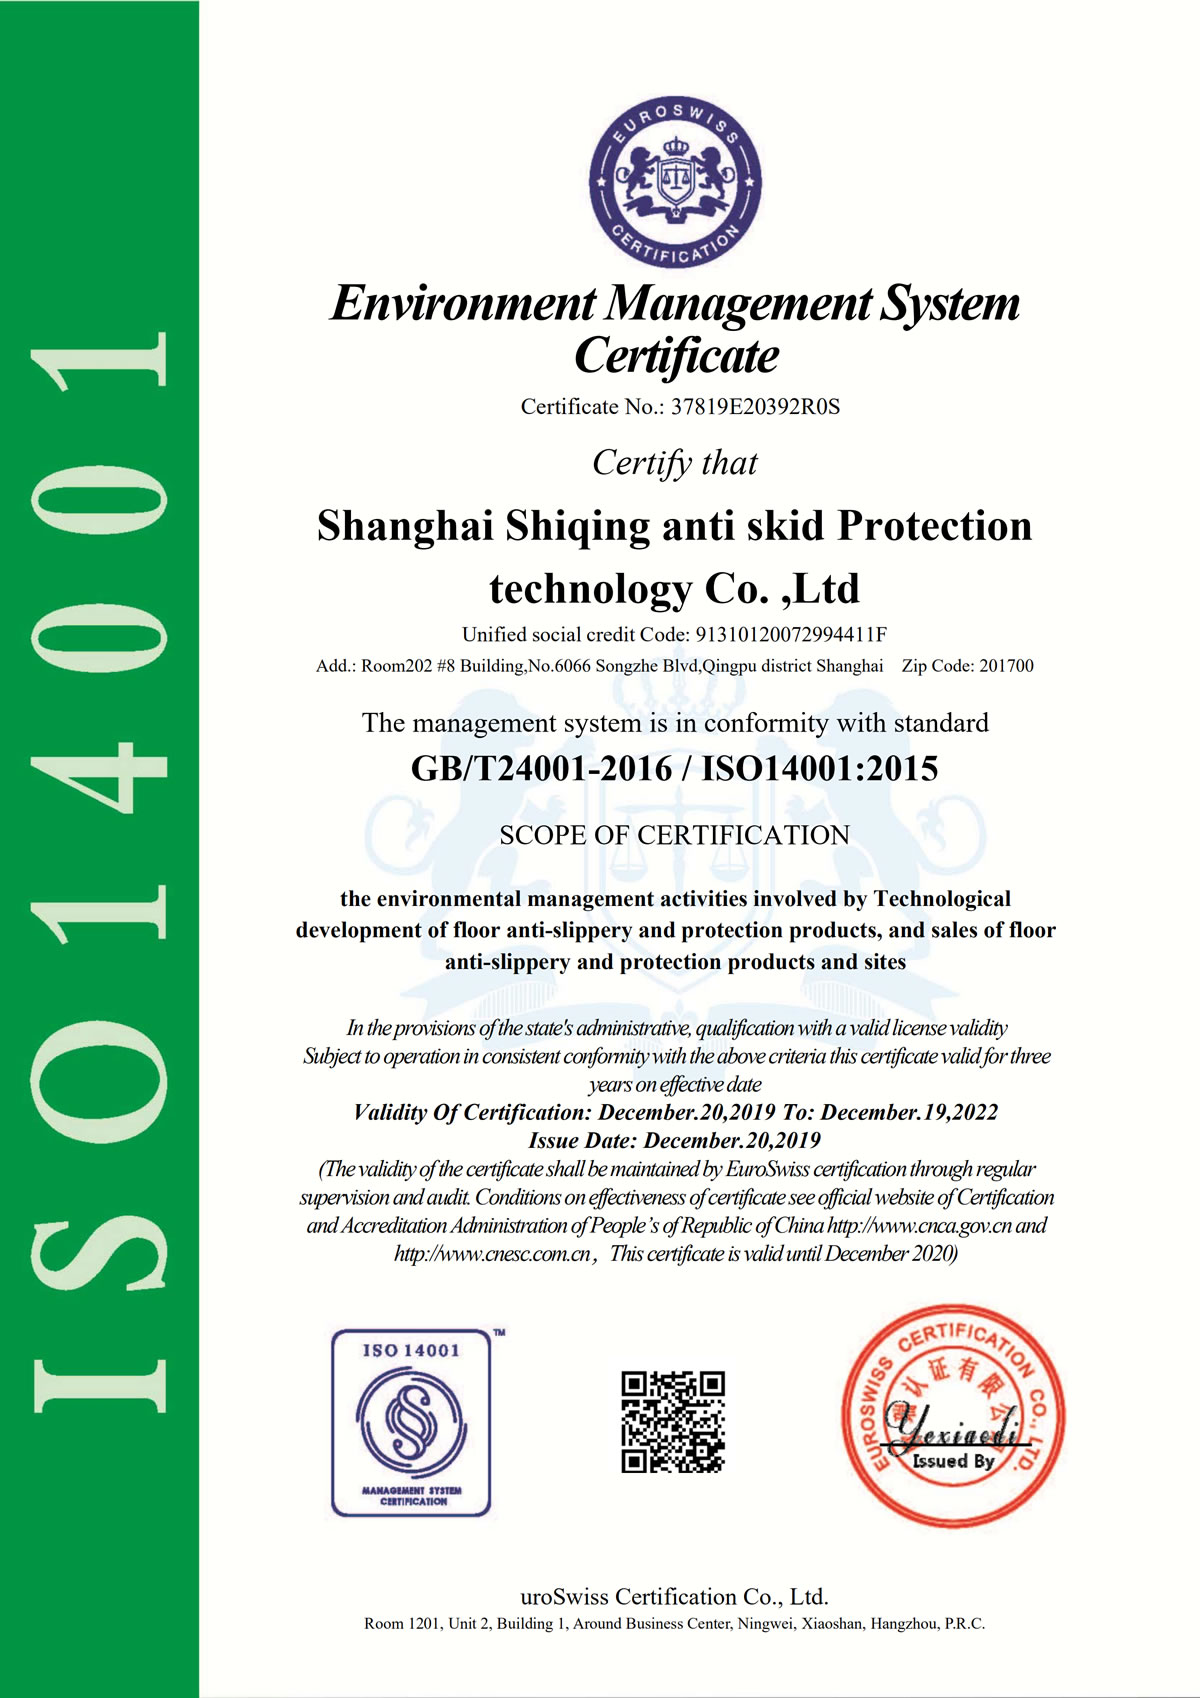 ISO14001環境管理體系認證、ISO9001質量管理體系認證、ISO45001職業健康安全管理體系認證